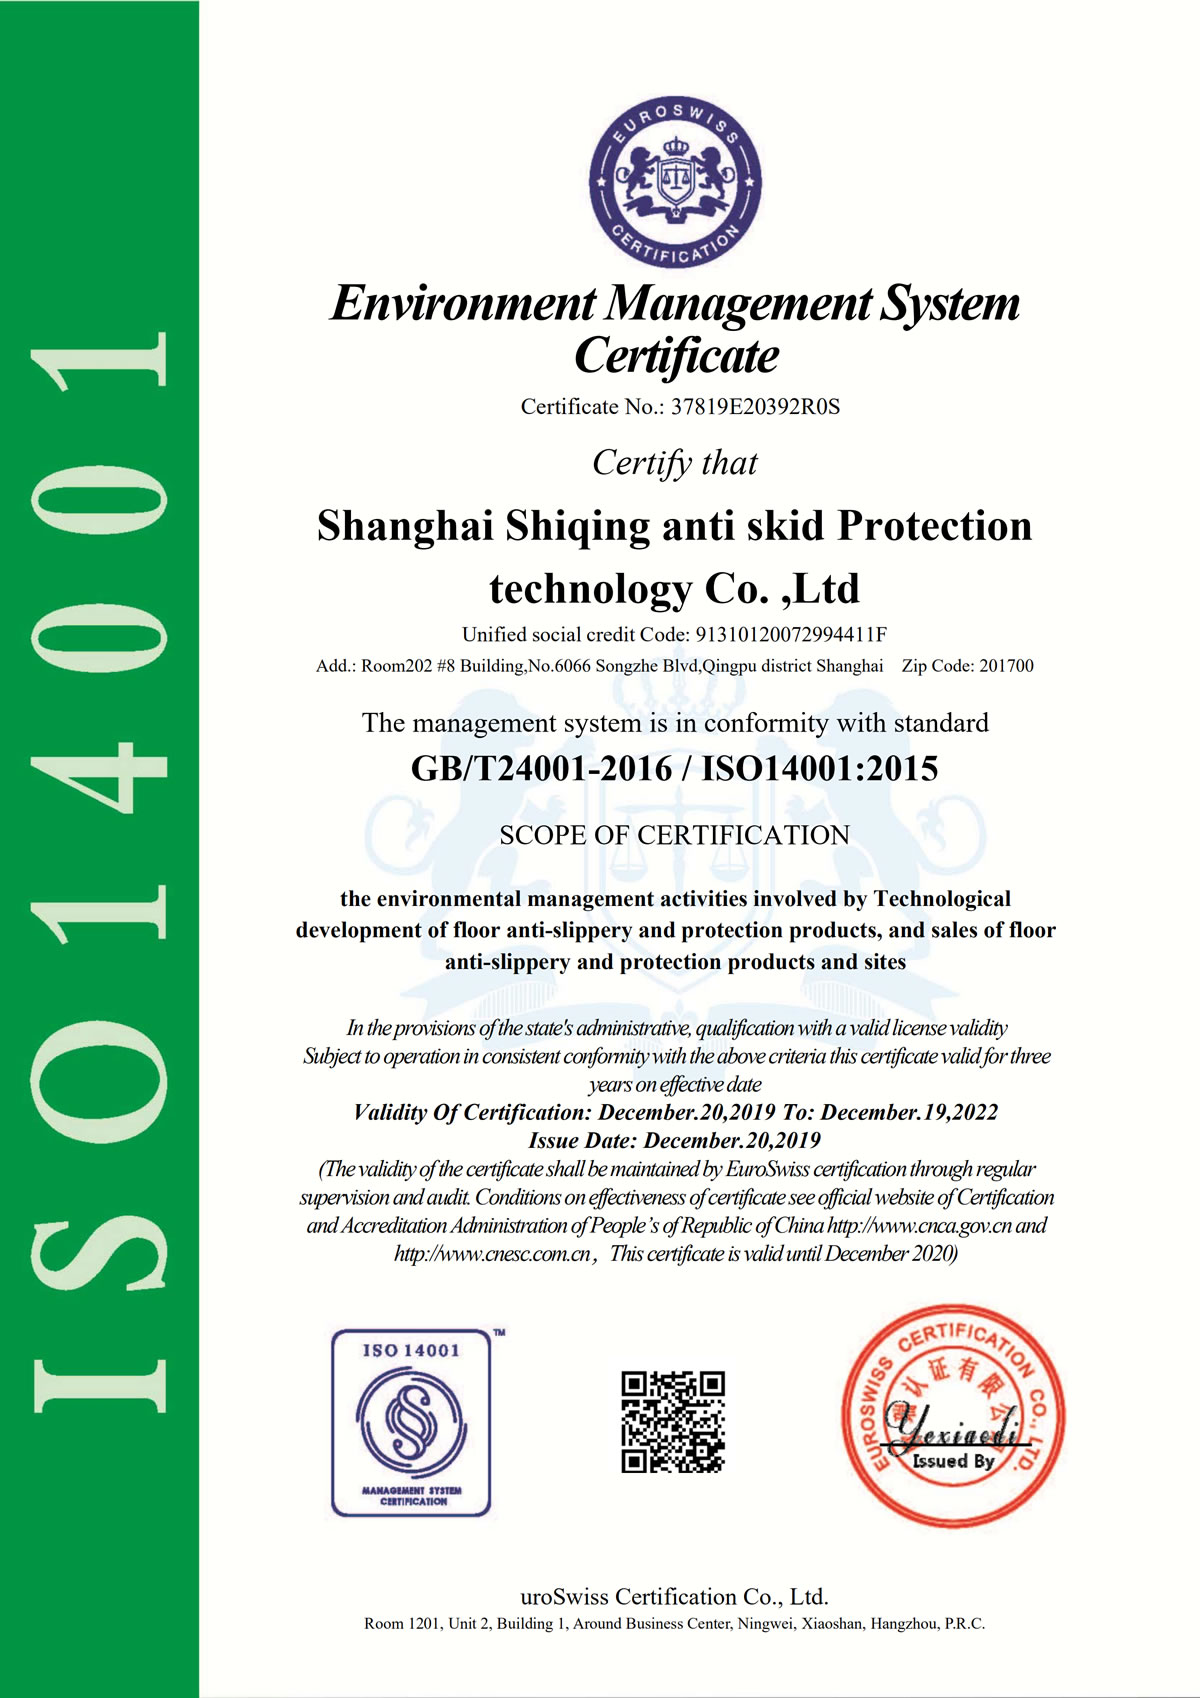 ISO14001環境管理體系認證、ISO9001質量管理體系認證、ISO45001職業健康安全管理體系認證